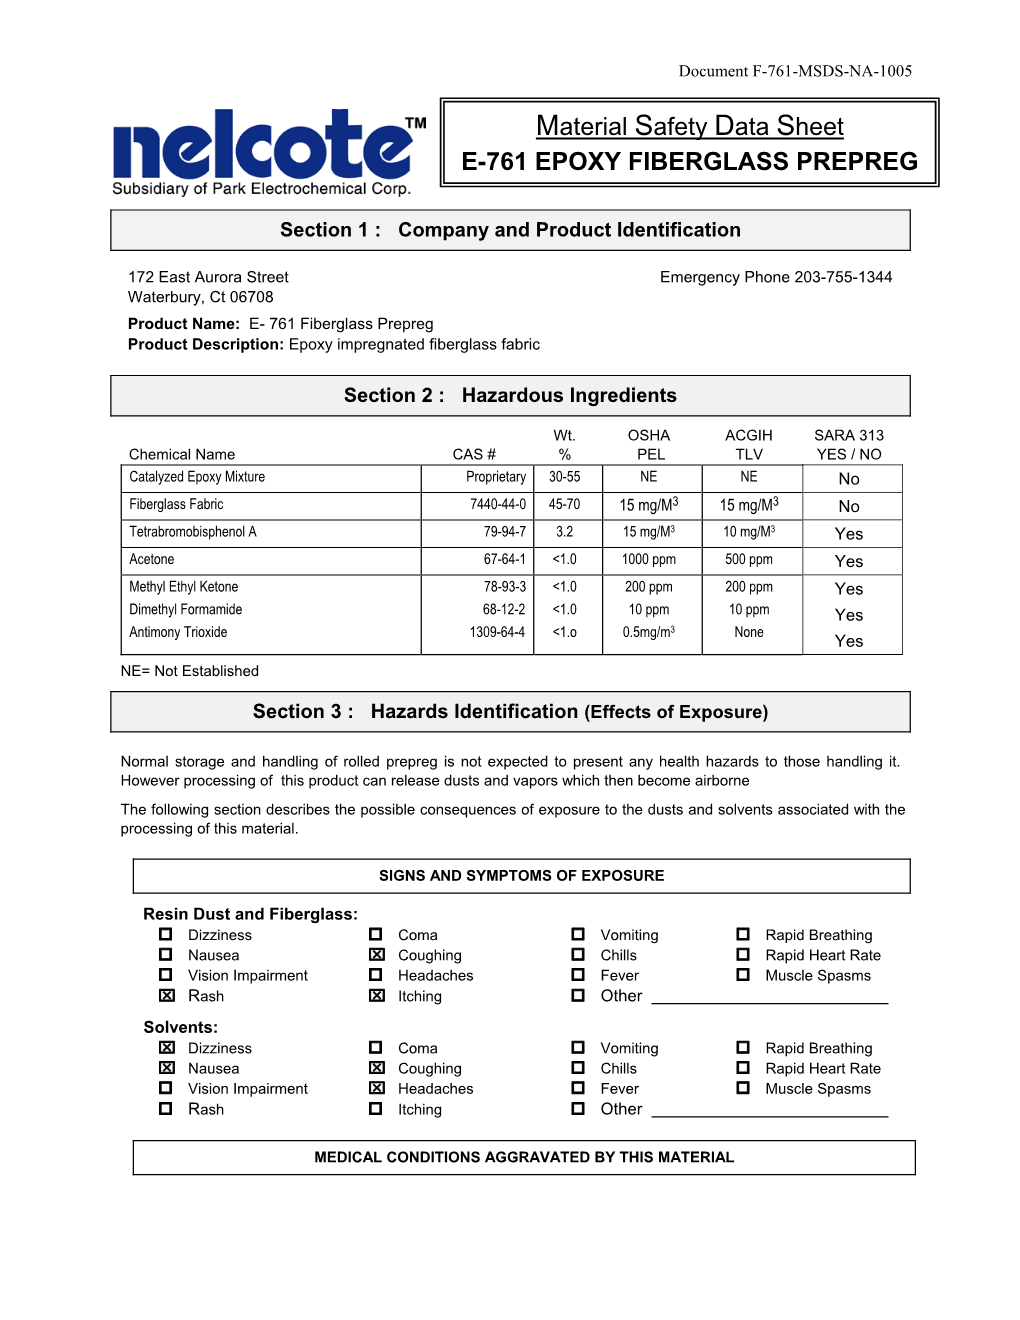 Material Safety Data Sheet E-761 EPOXY FIBERGLASS PREPREG